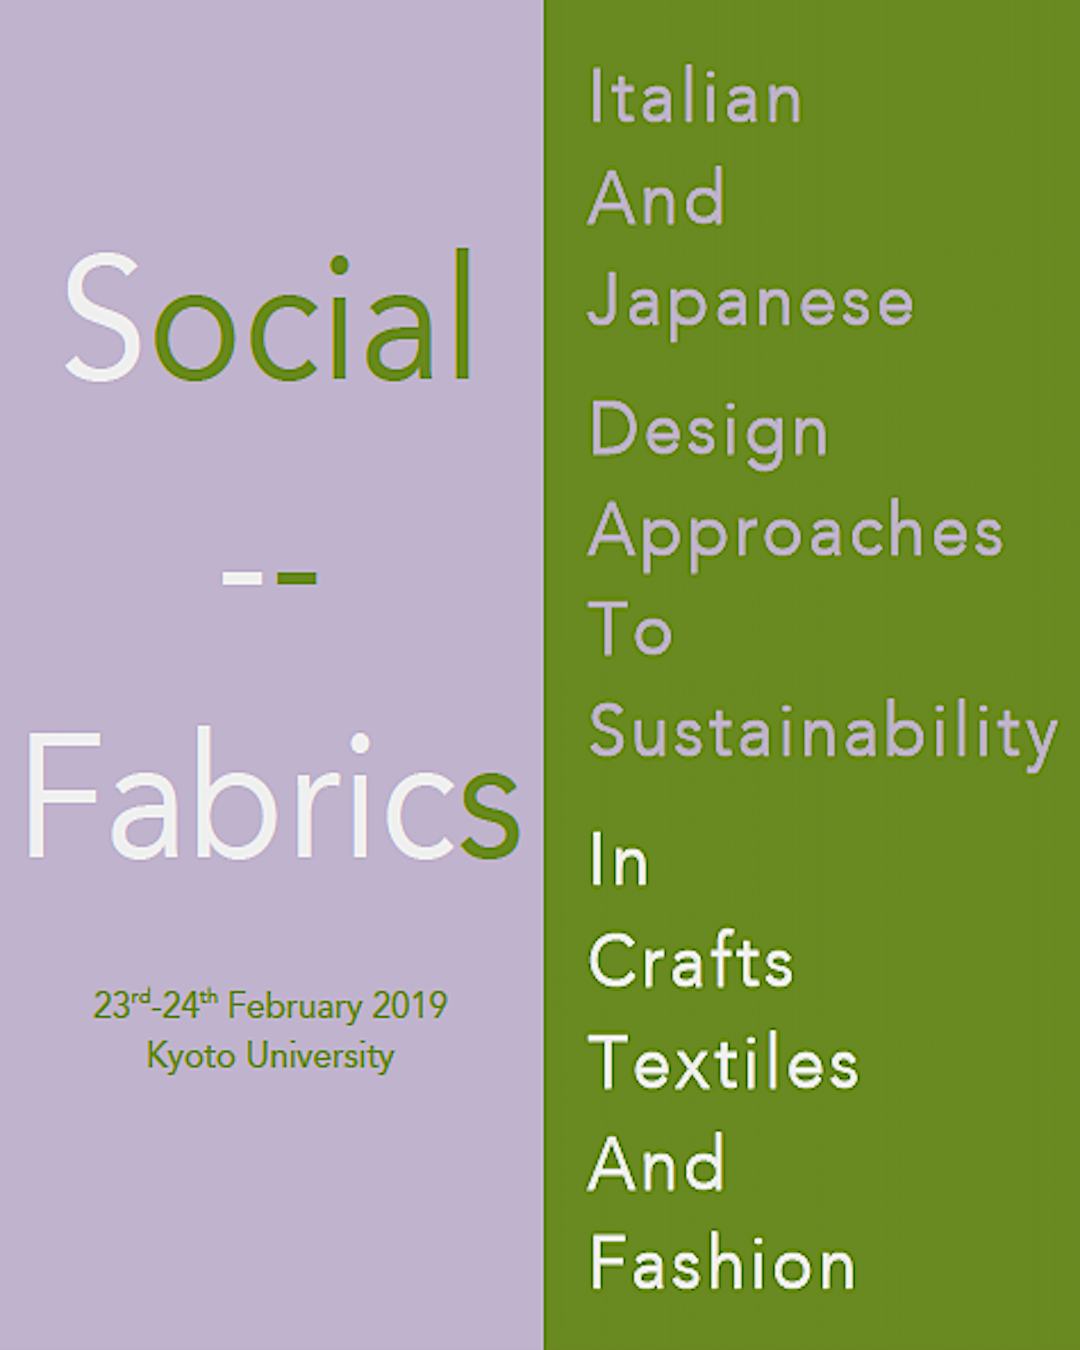 【DWK CROSS1】Social Fabrics's image 1